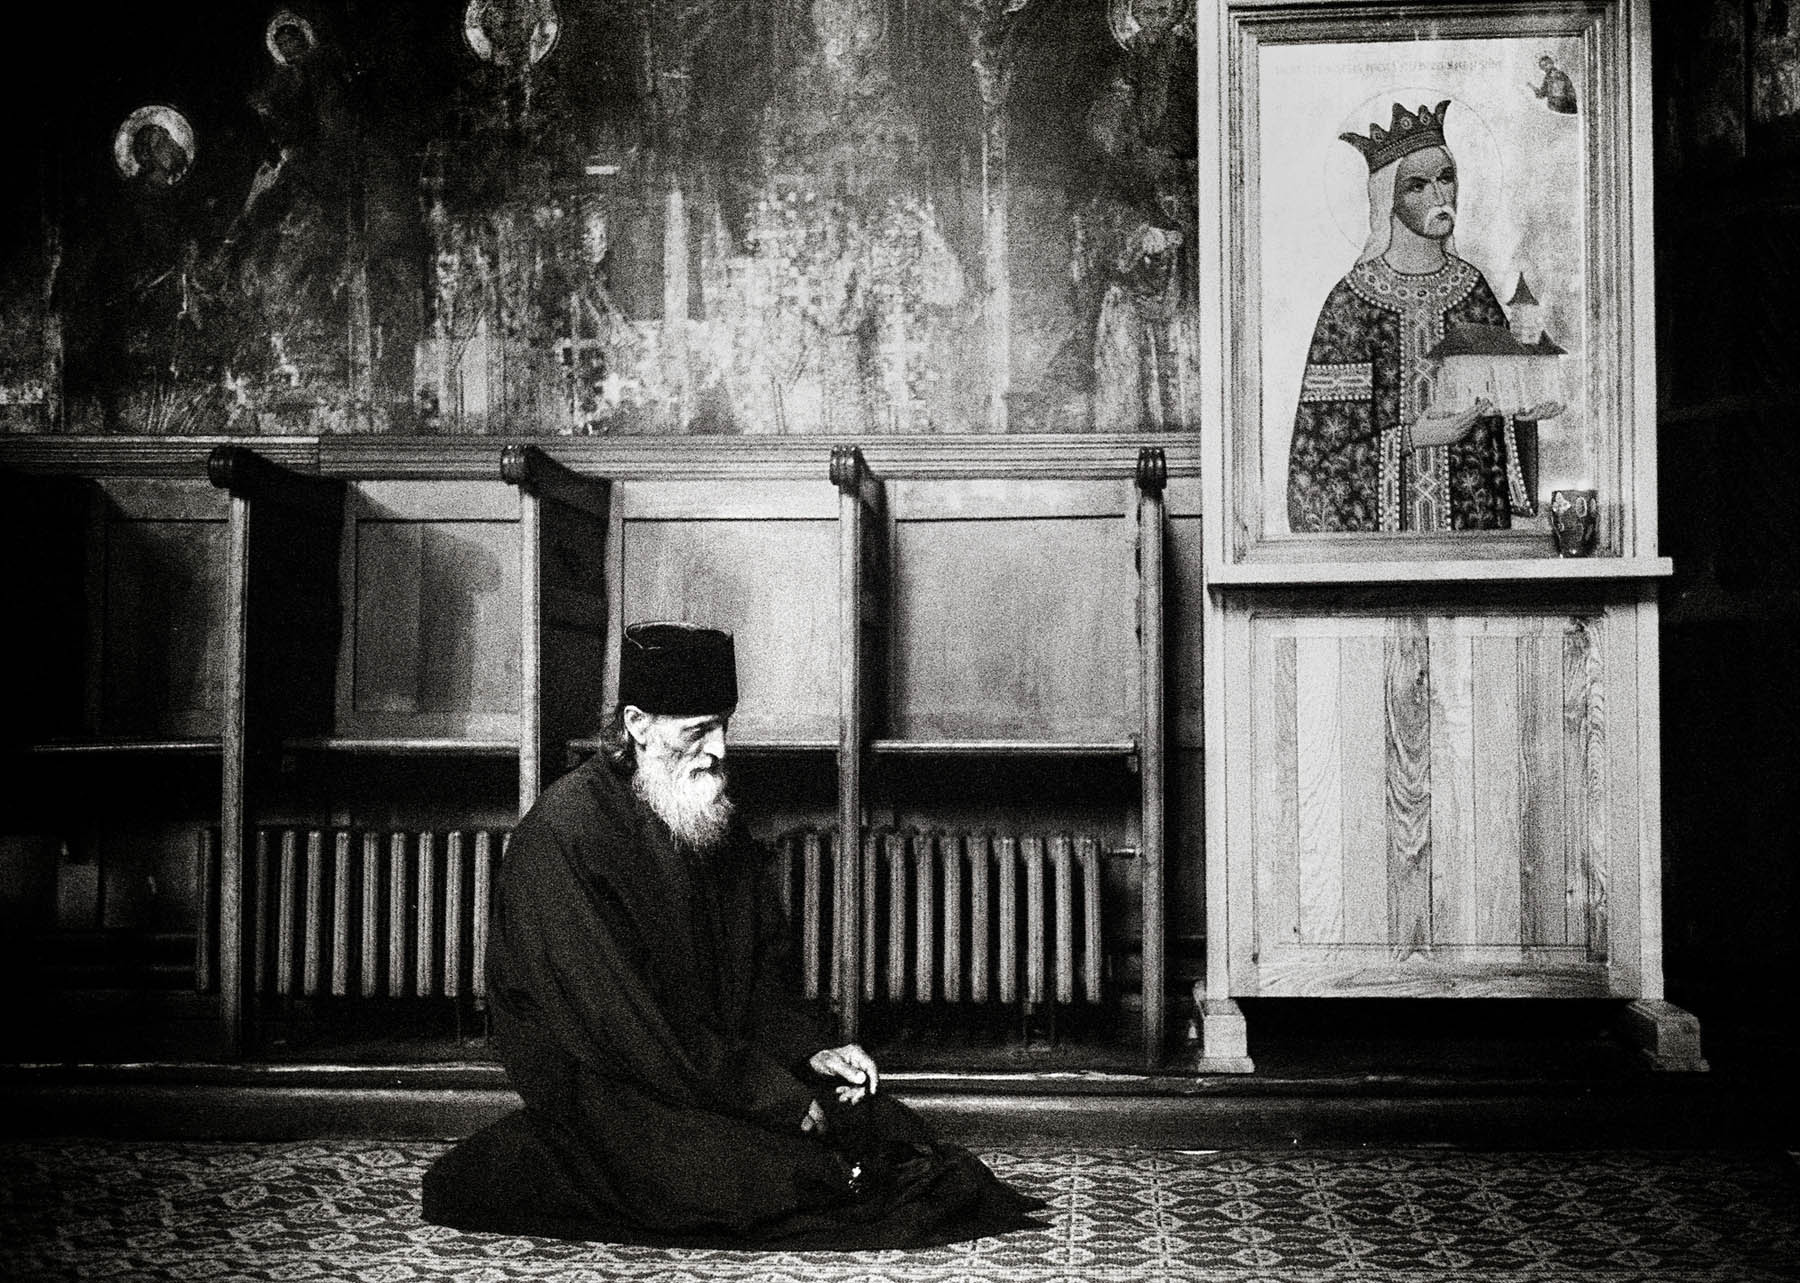 Orthodox monks in Romania